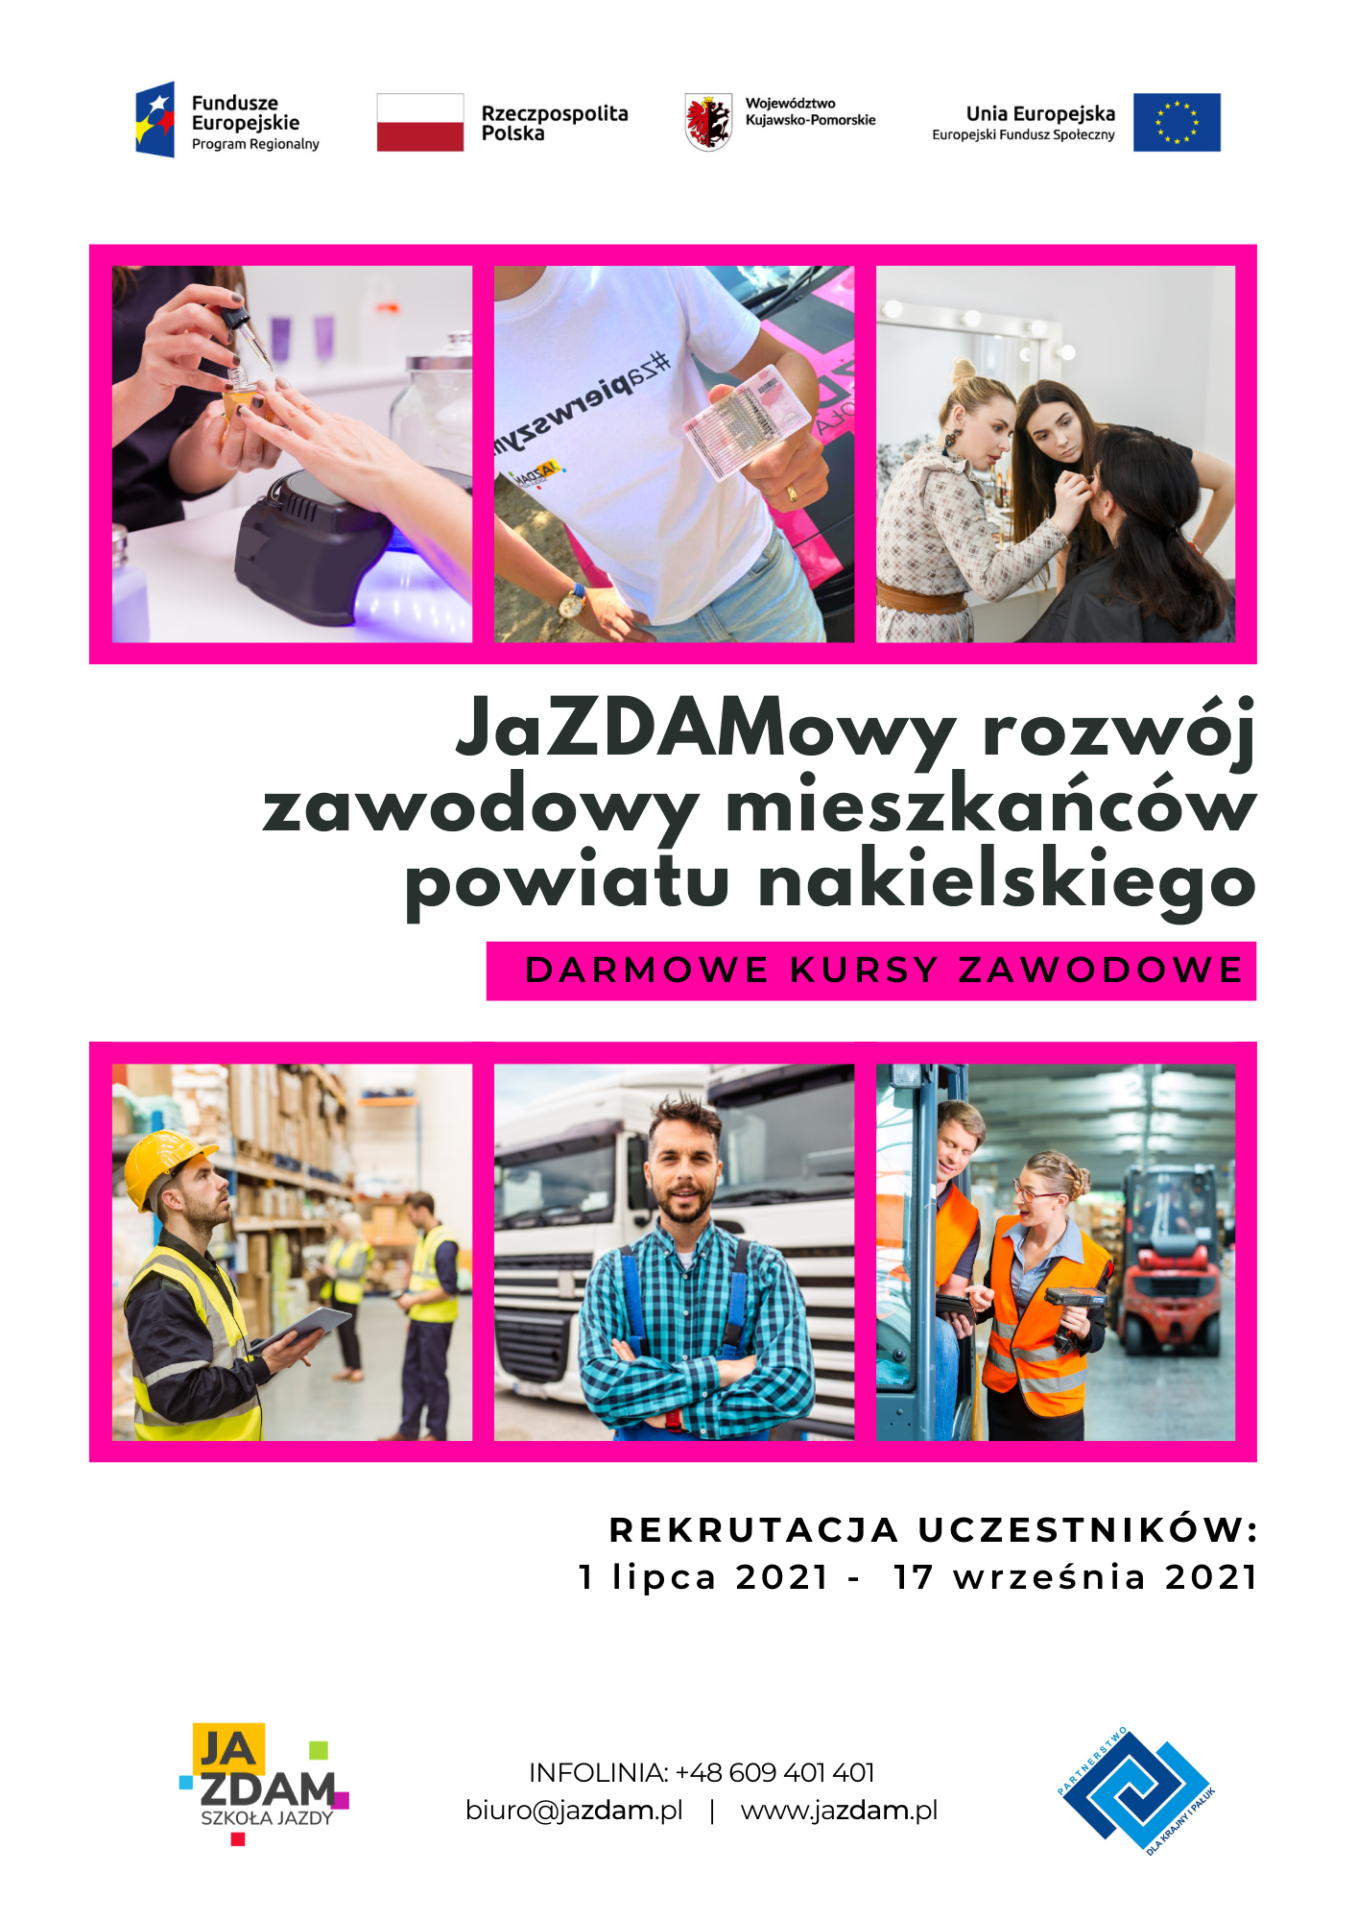 Rekrutacja do projektu „JaZDAMowy rozwój zawodowy mieszkańców powiatu nakielskiego”